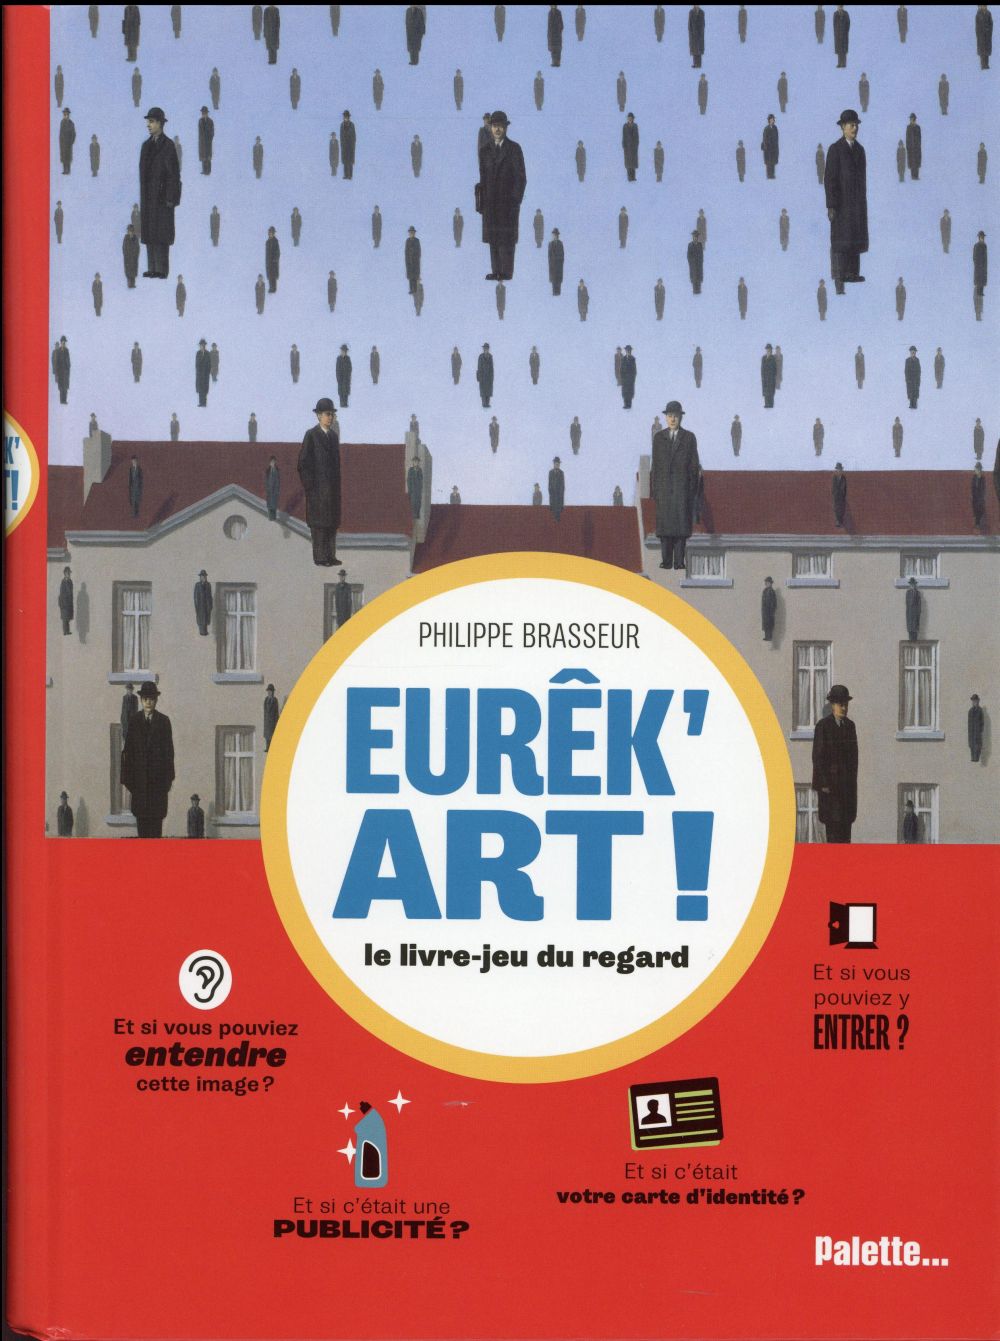 EUREK'ART!